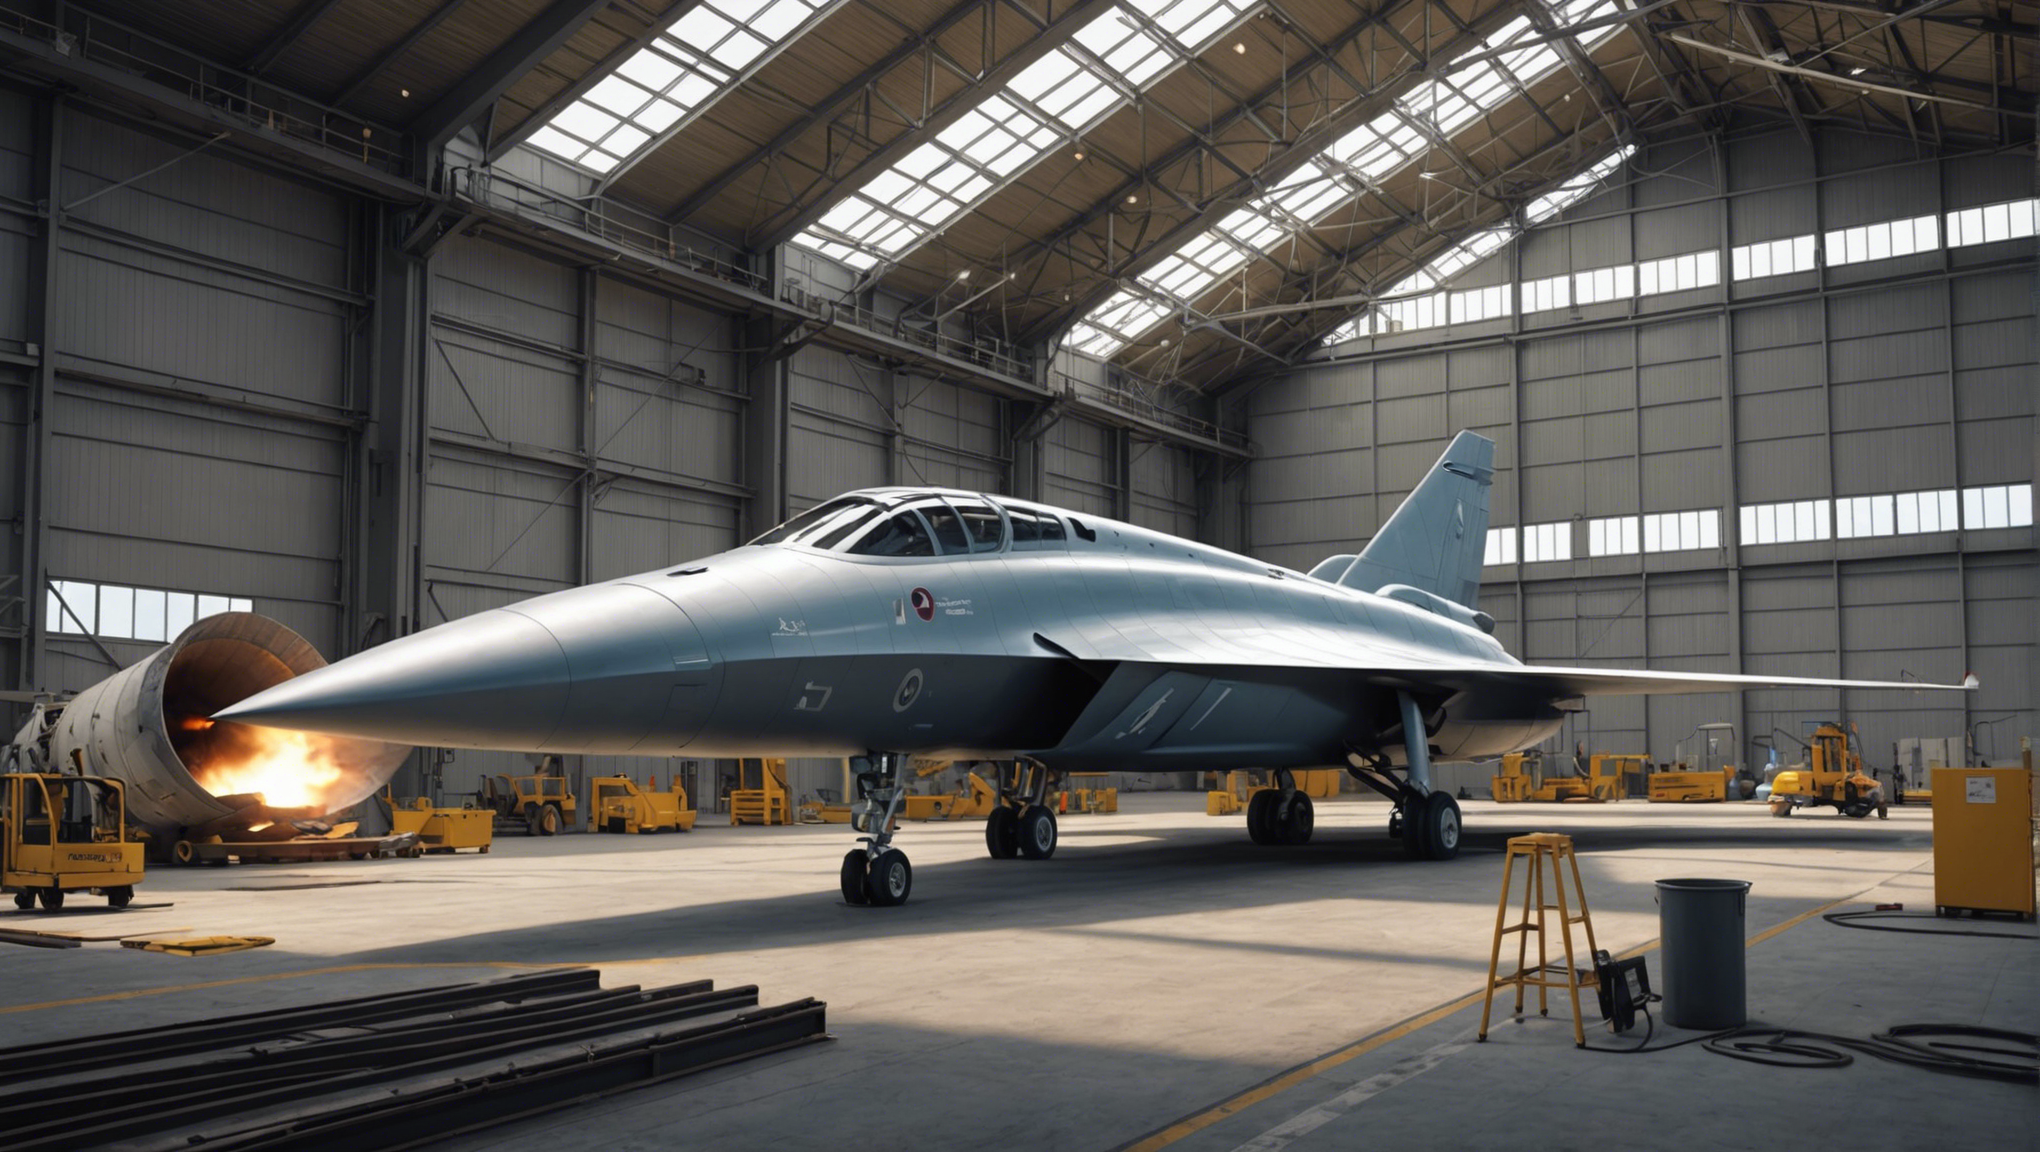 découvrez comment boom a terminé la construction de son usine de fabrication des avions supersoniques overture et entrez dans l'ère de la haute technologie aéronautique.